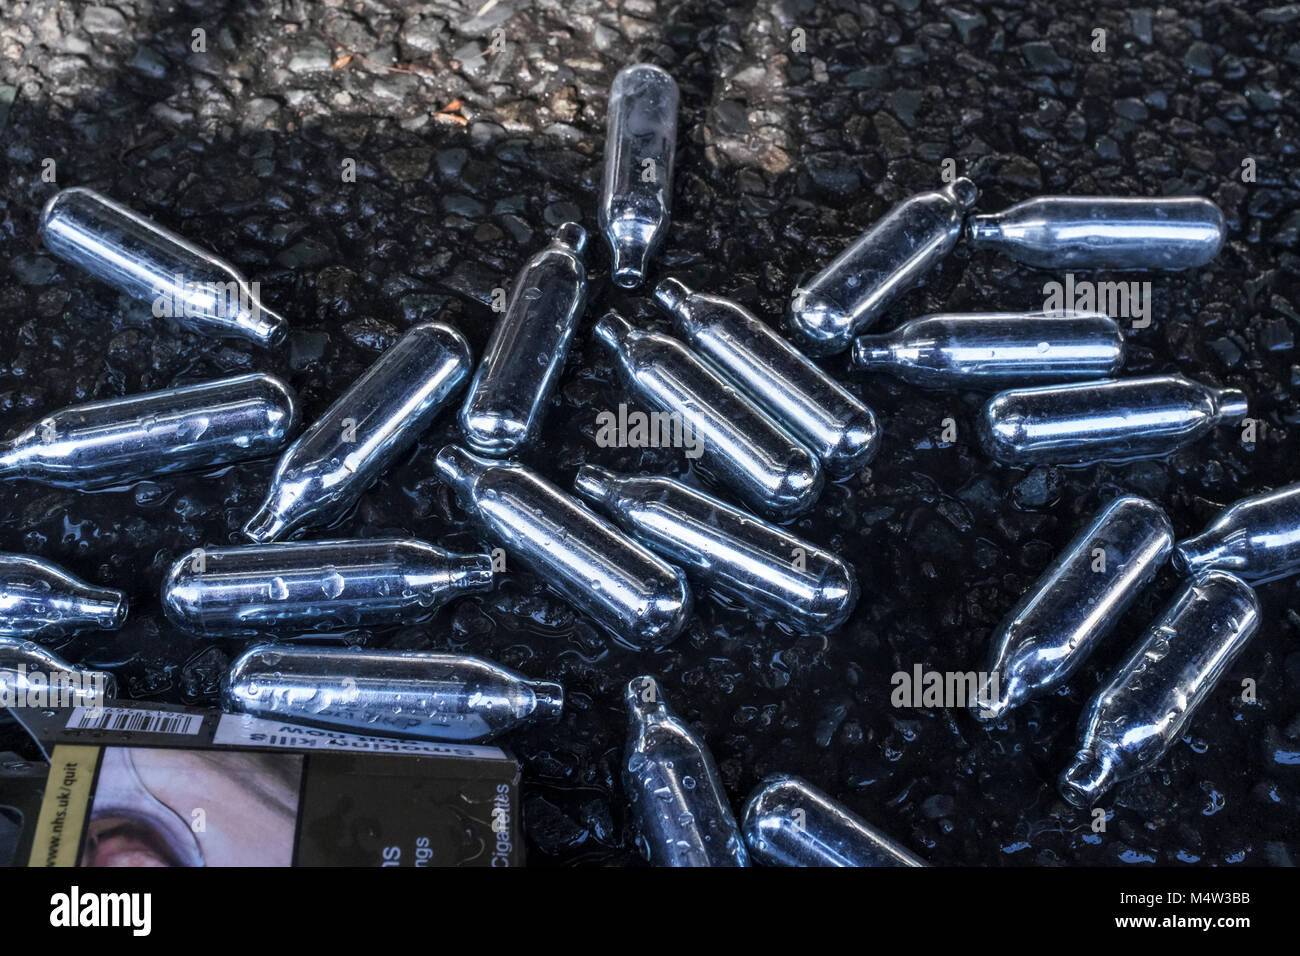 Bombonas de óxido nitroso descartados en street, London, UK Foto de stock